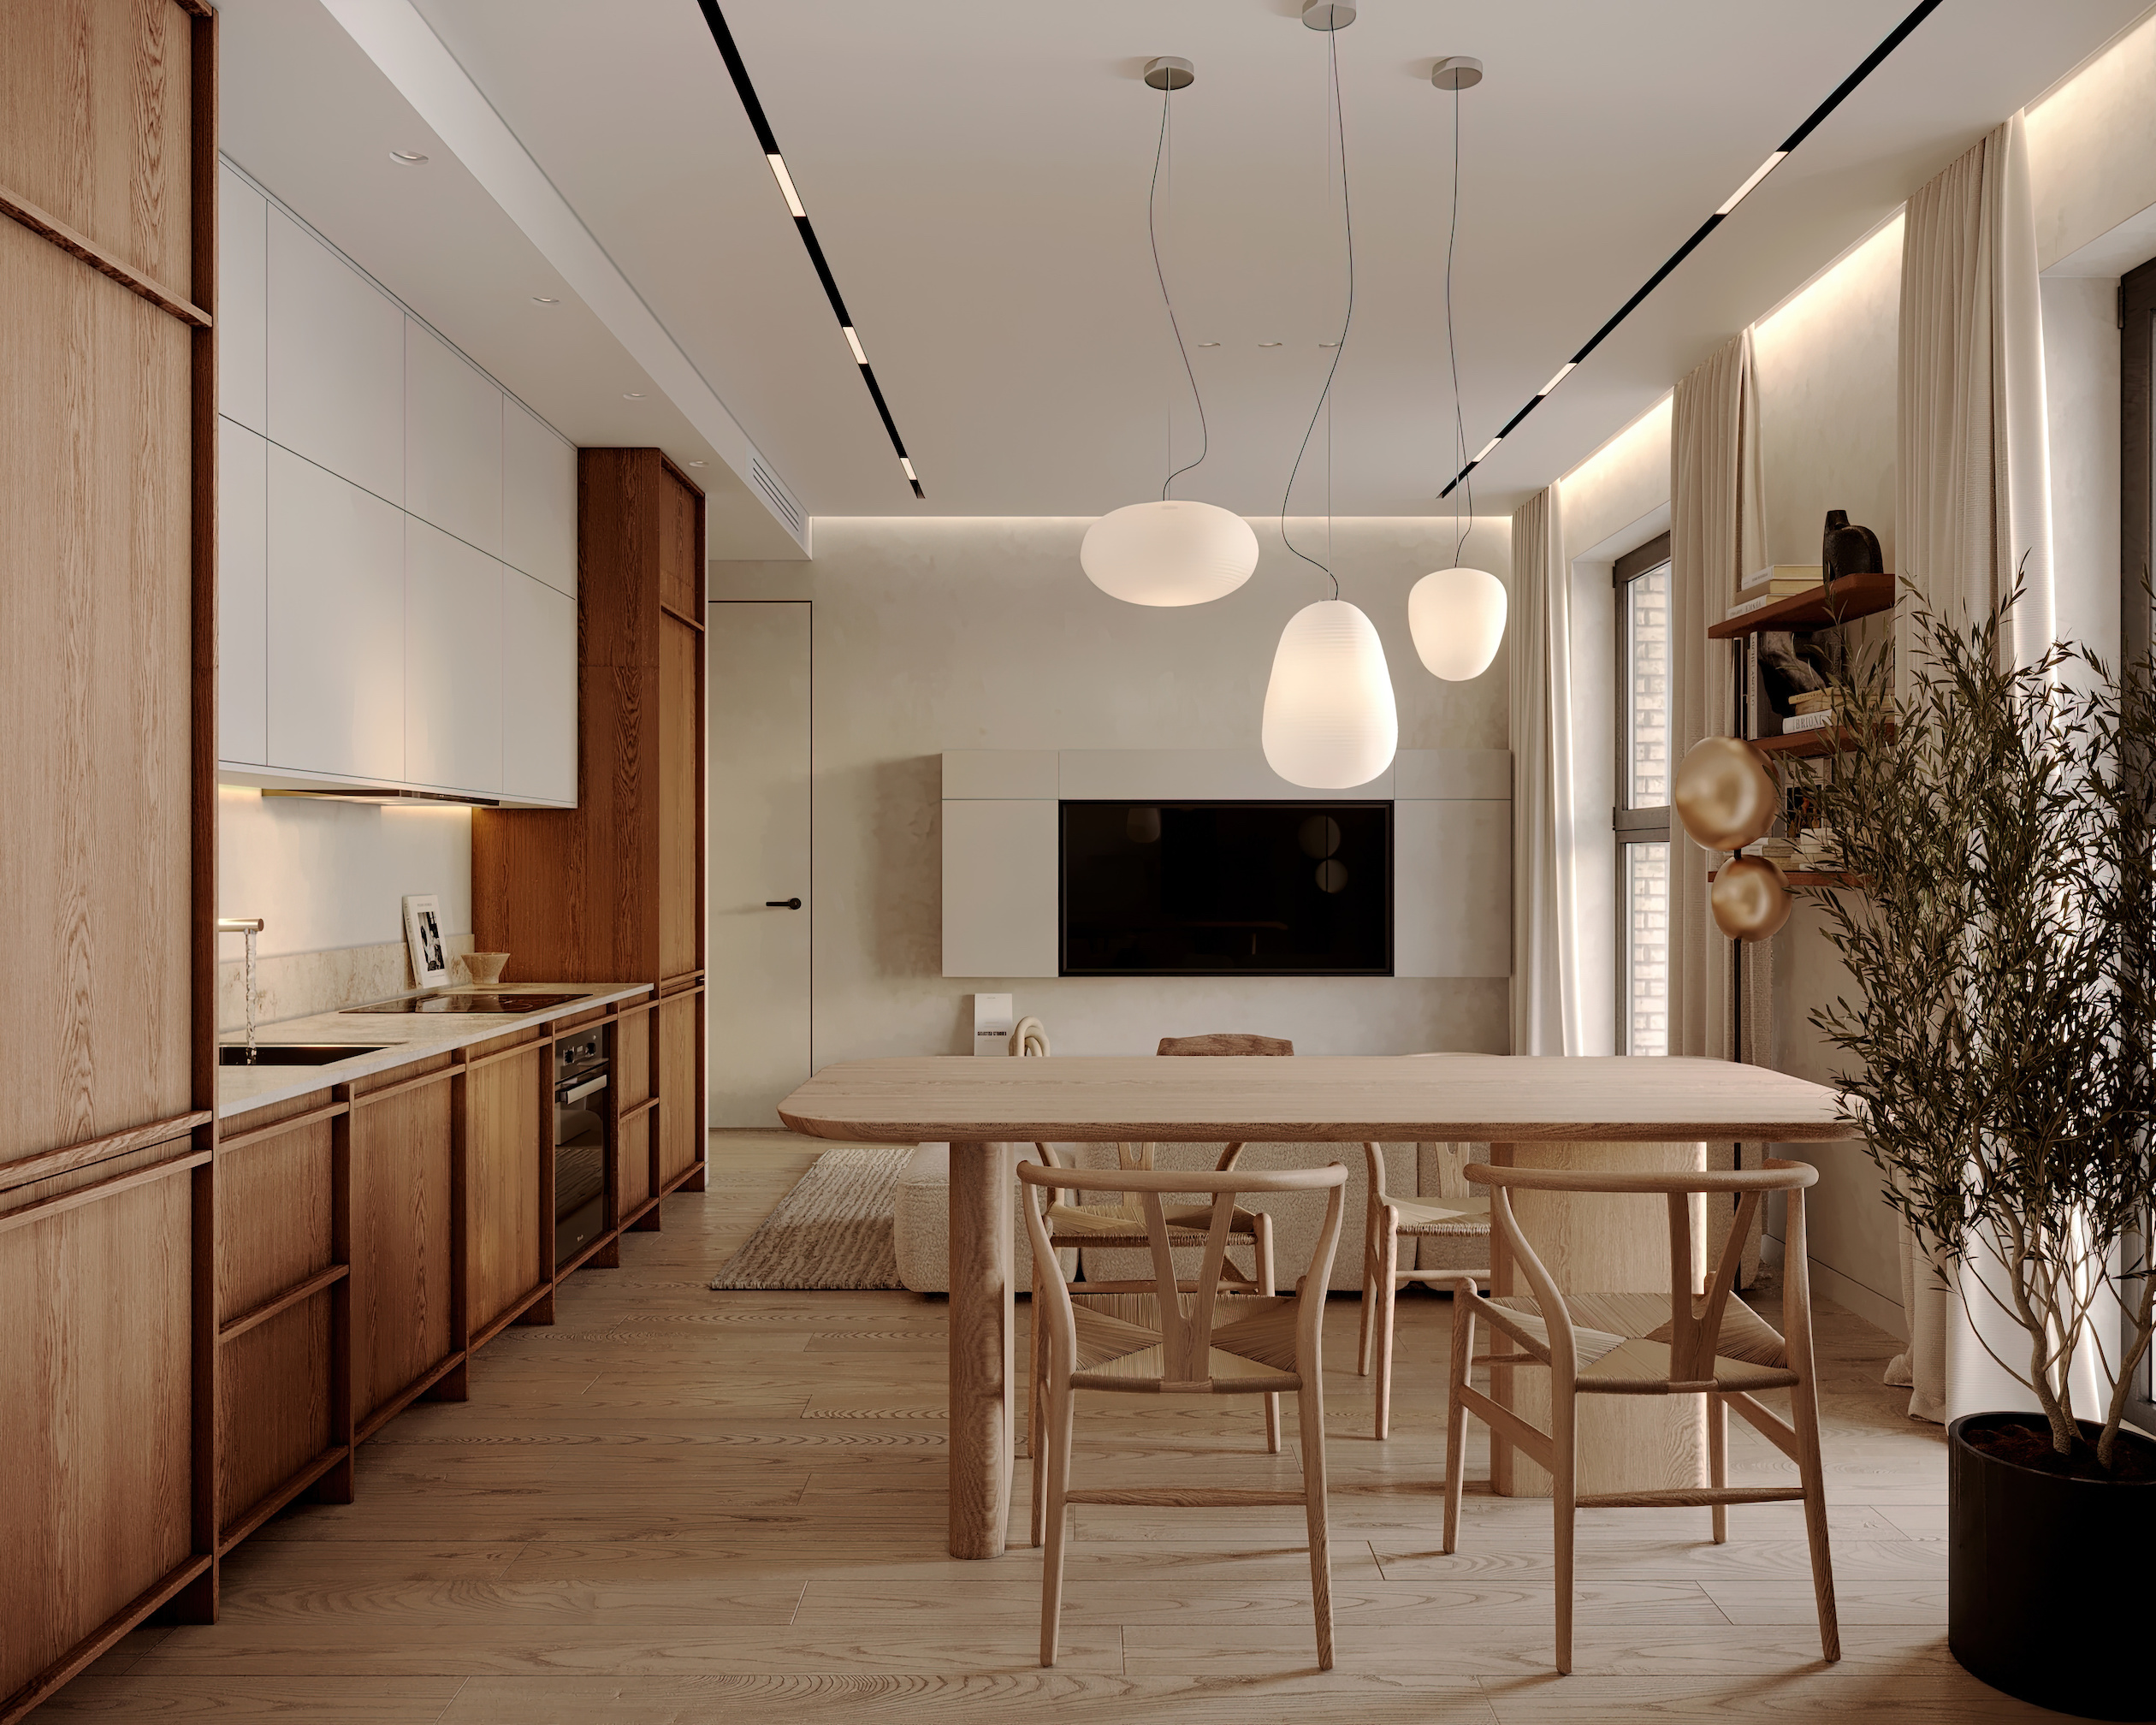 Небольшое пространство кухни-гостиной задействовано полностью: мягкая зона, зона кухни и зона столовой плавно переходят друг в друга 